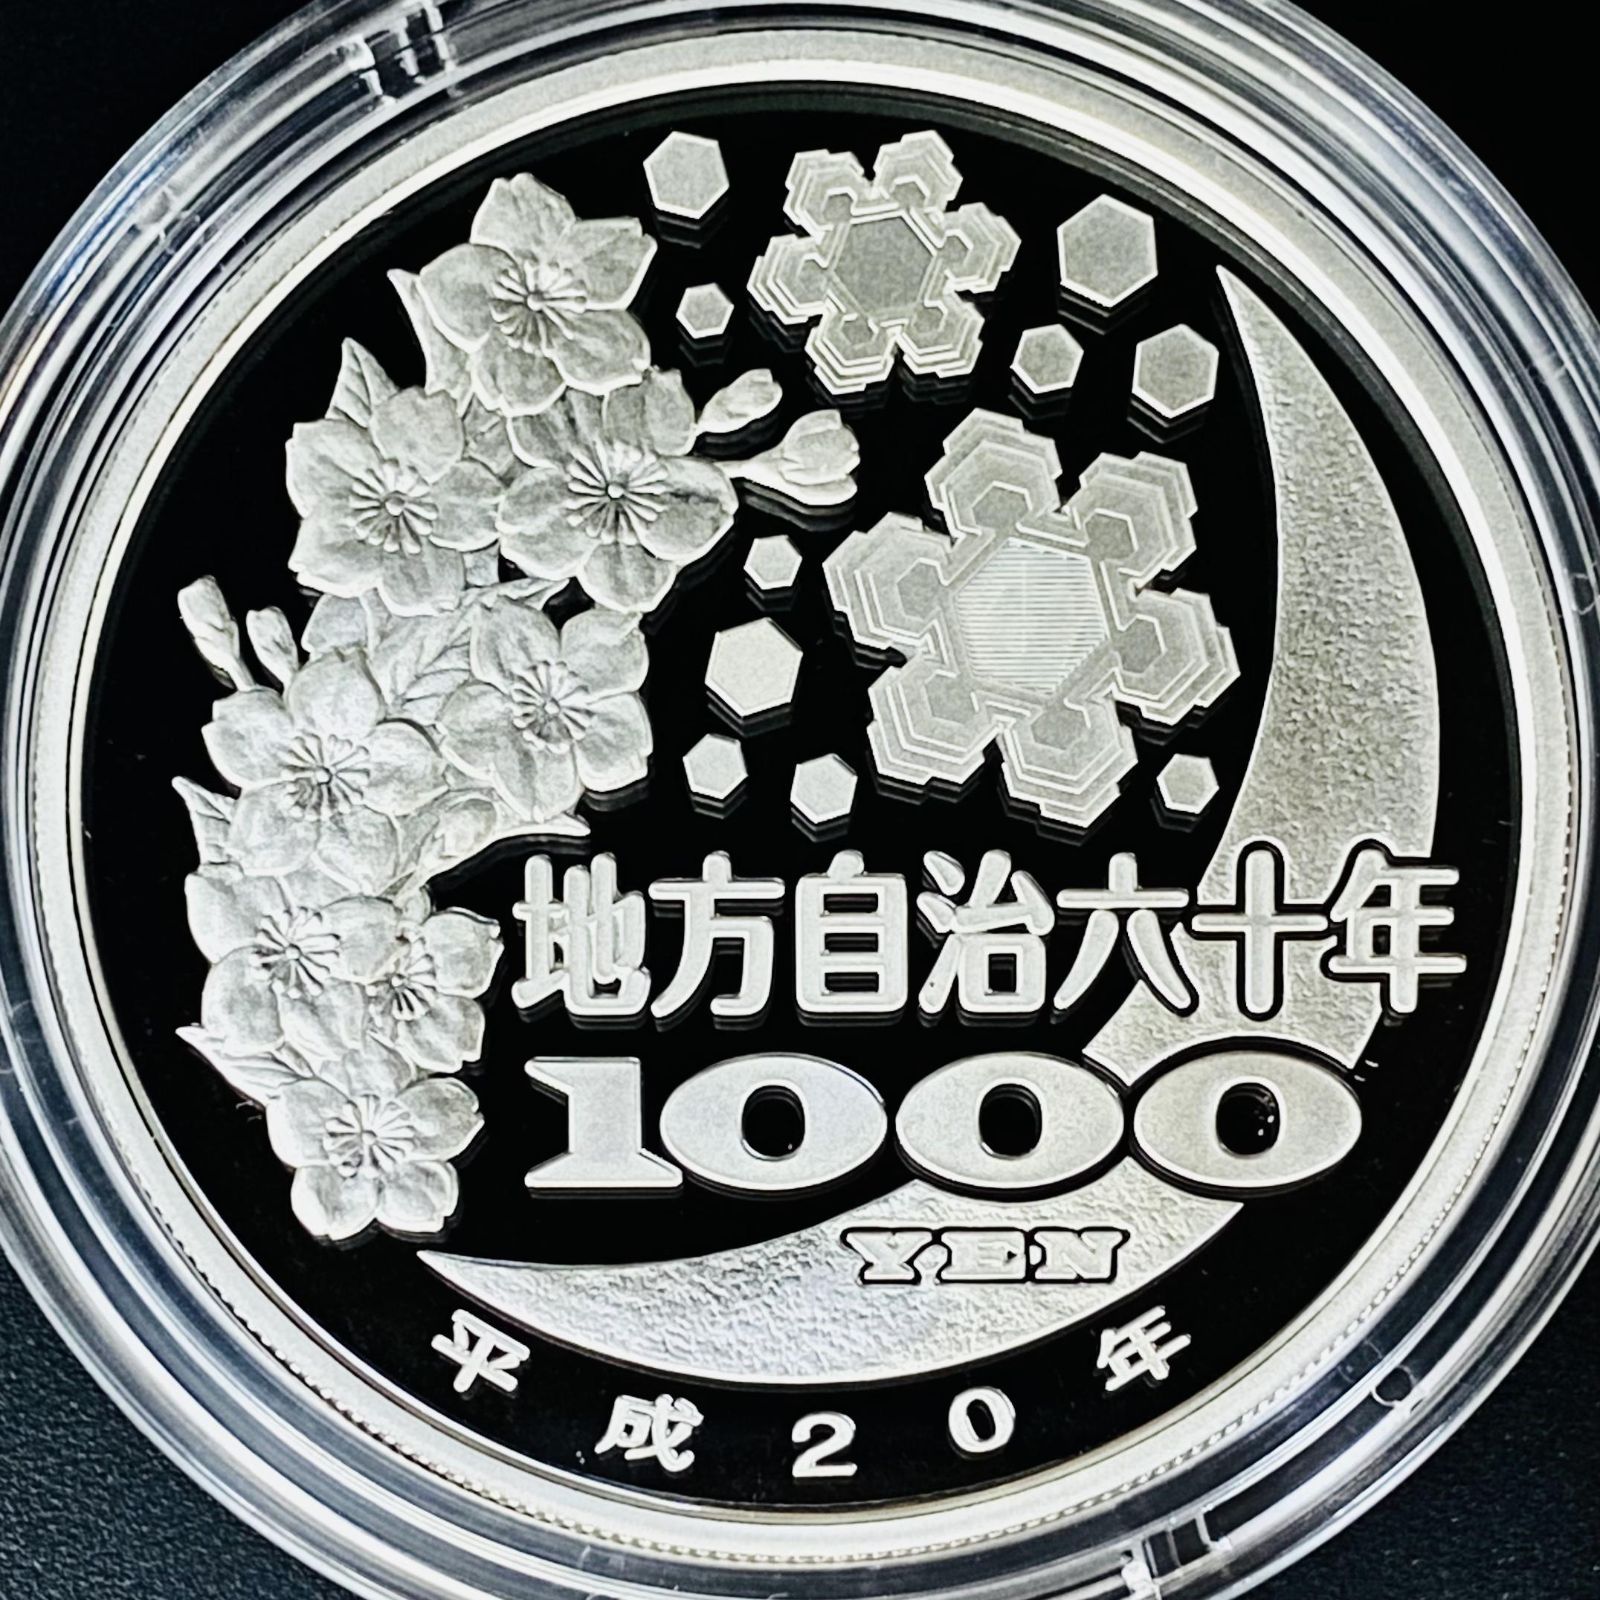 ー品販売 北海道 地方自治法施行60周年記念 1000円銀貨 プルーフ 